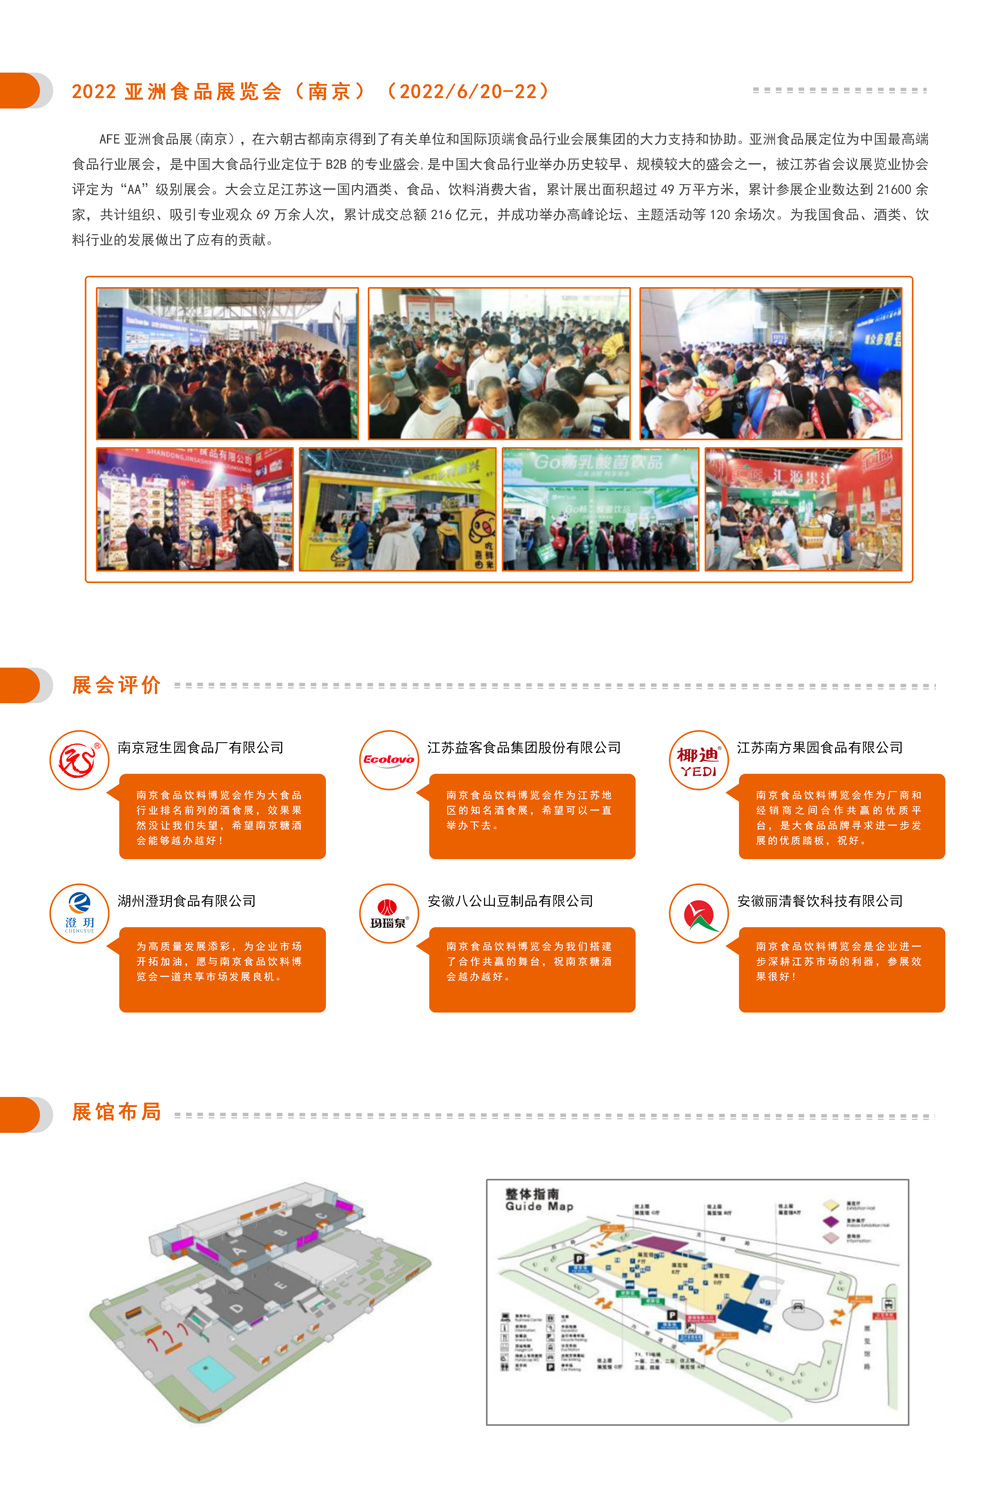 邀请函-2022第10届中国（南京）国际食品饮料博览会(1)_02.jpg